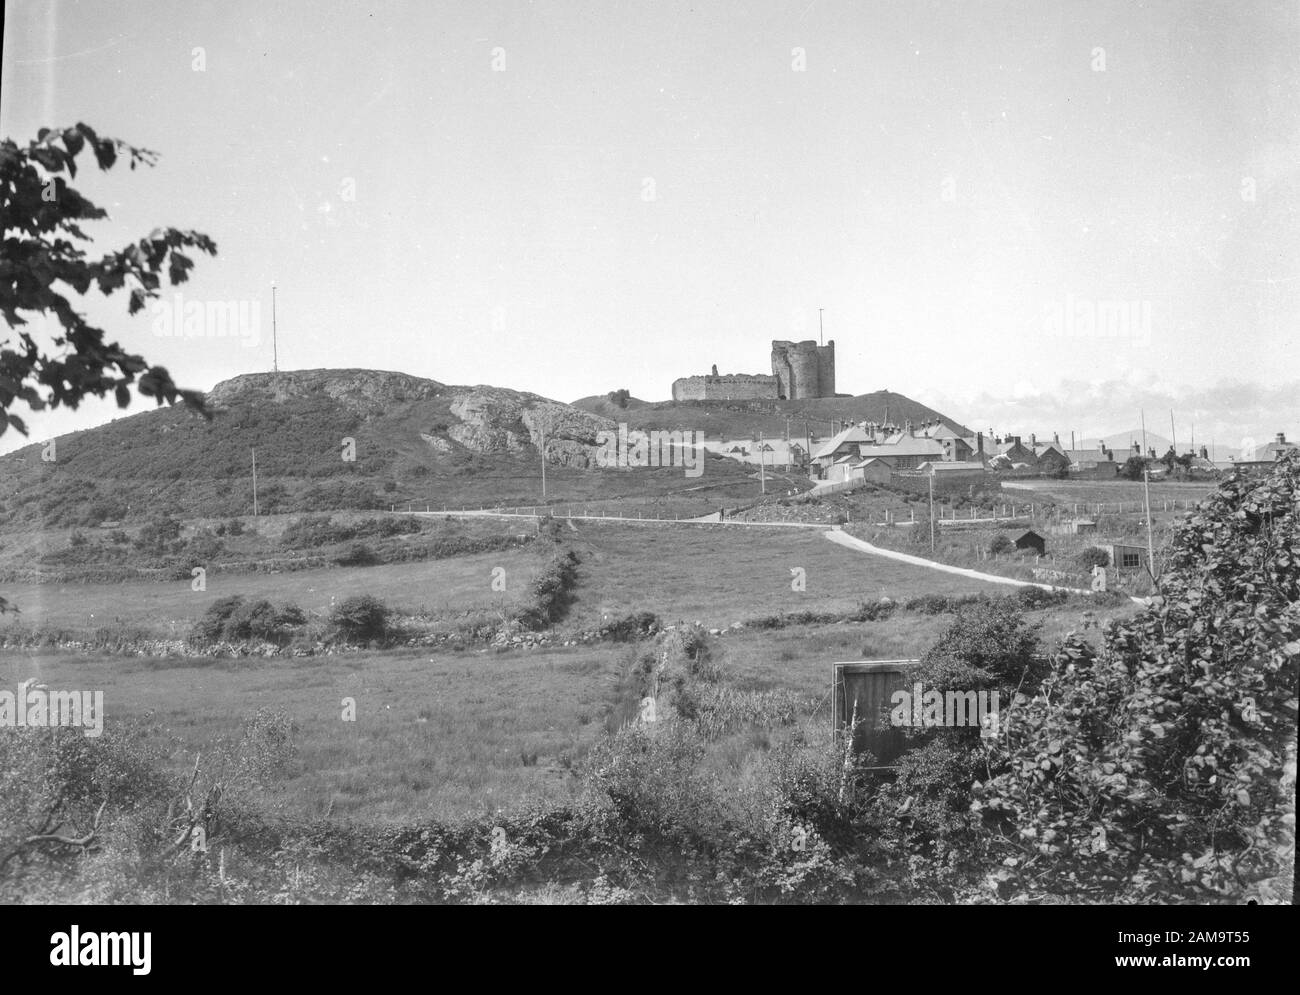 Archive image vers 1920 du Château de Criccieth/ Castell Cricieth, Pays de Galles. Du négatif original. Banque D'Images